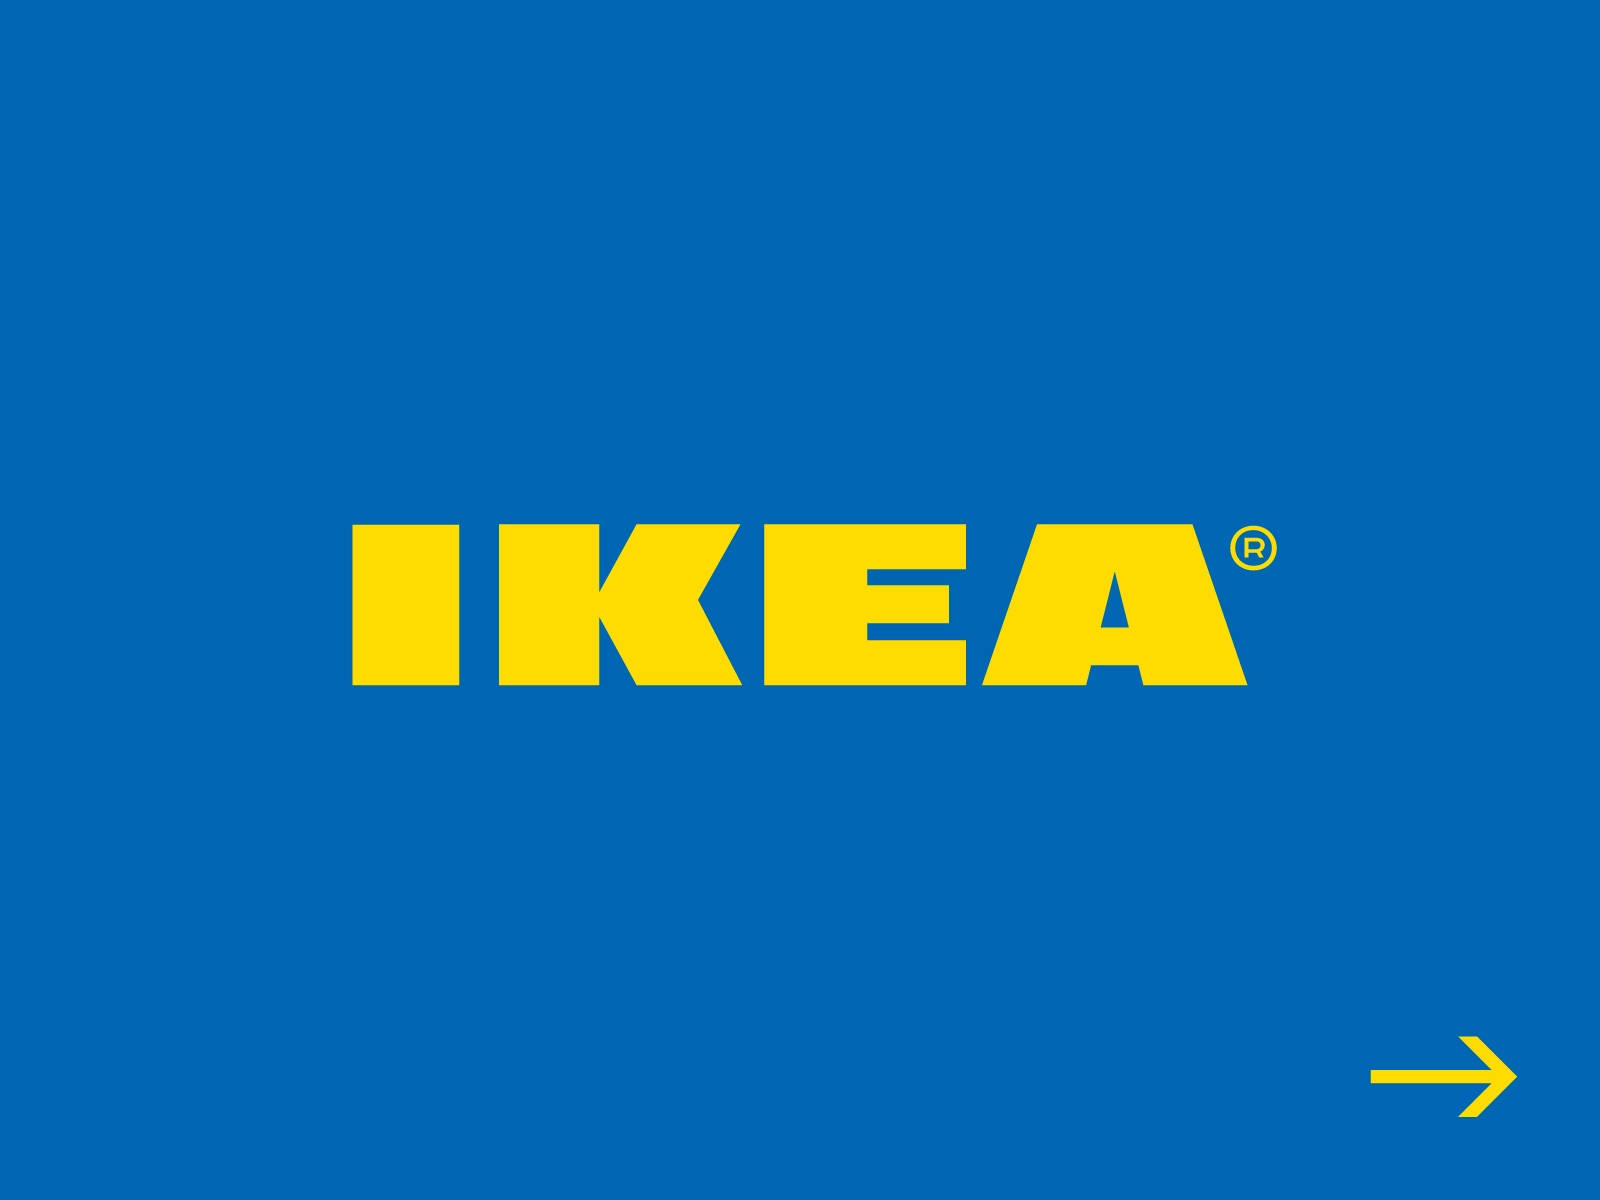 Logotipoamarillo De Ikea Azul Fondo de pantalla